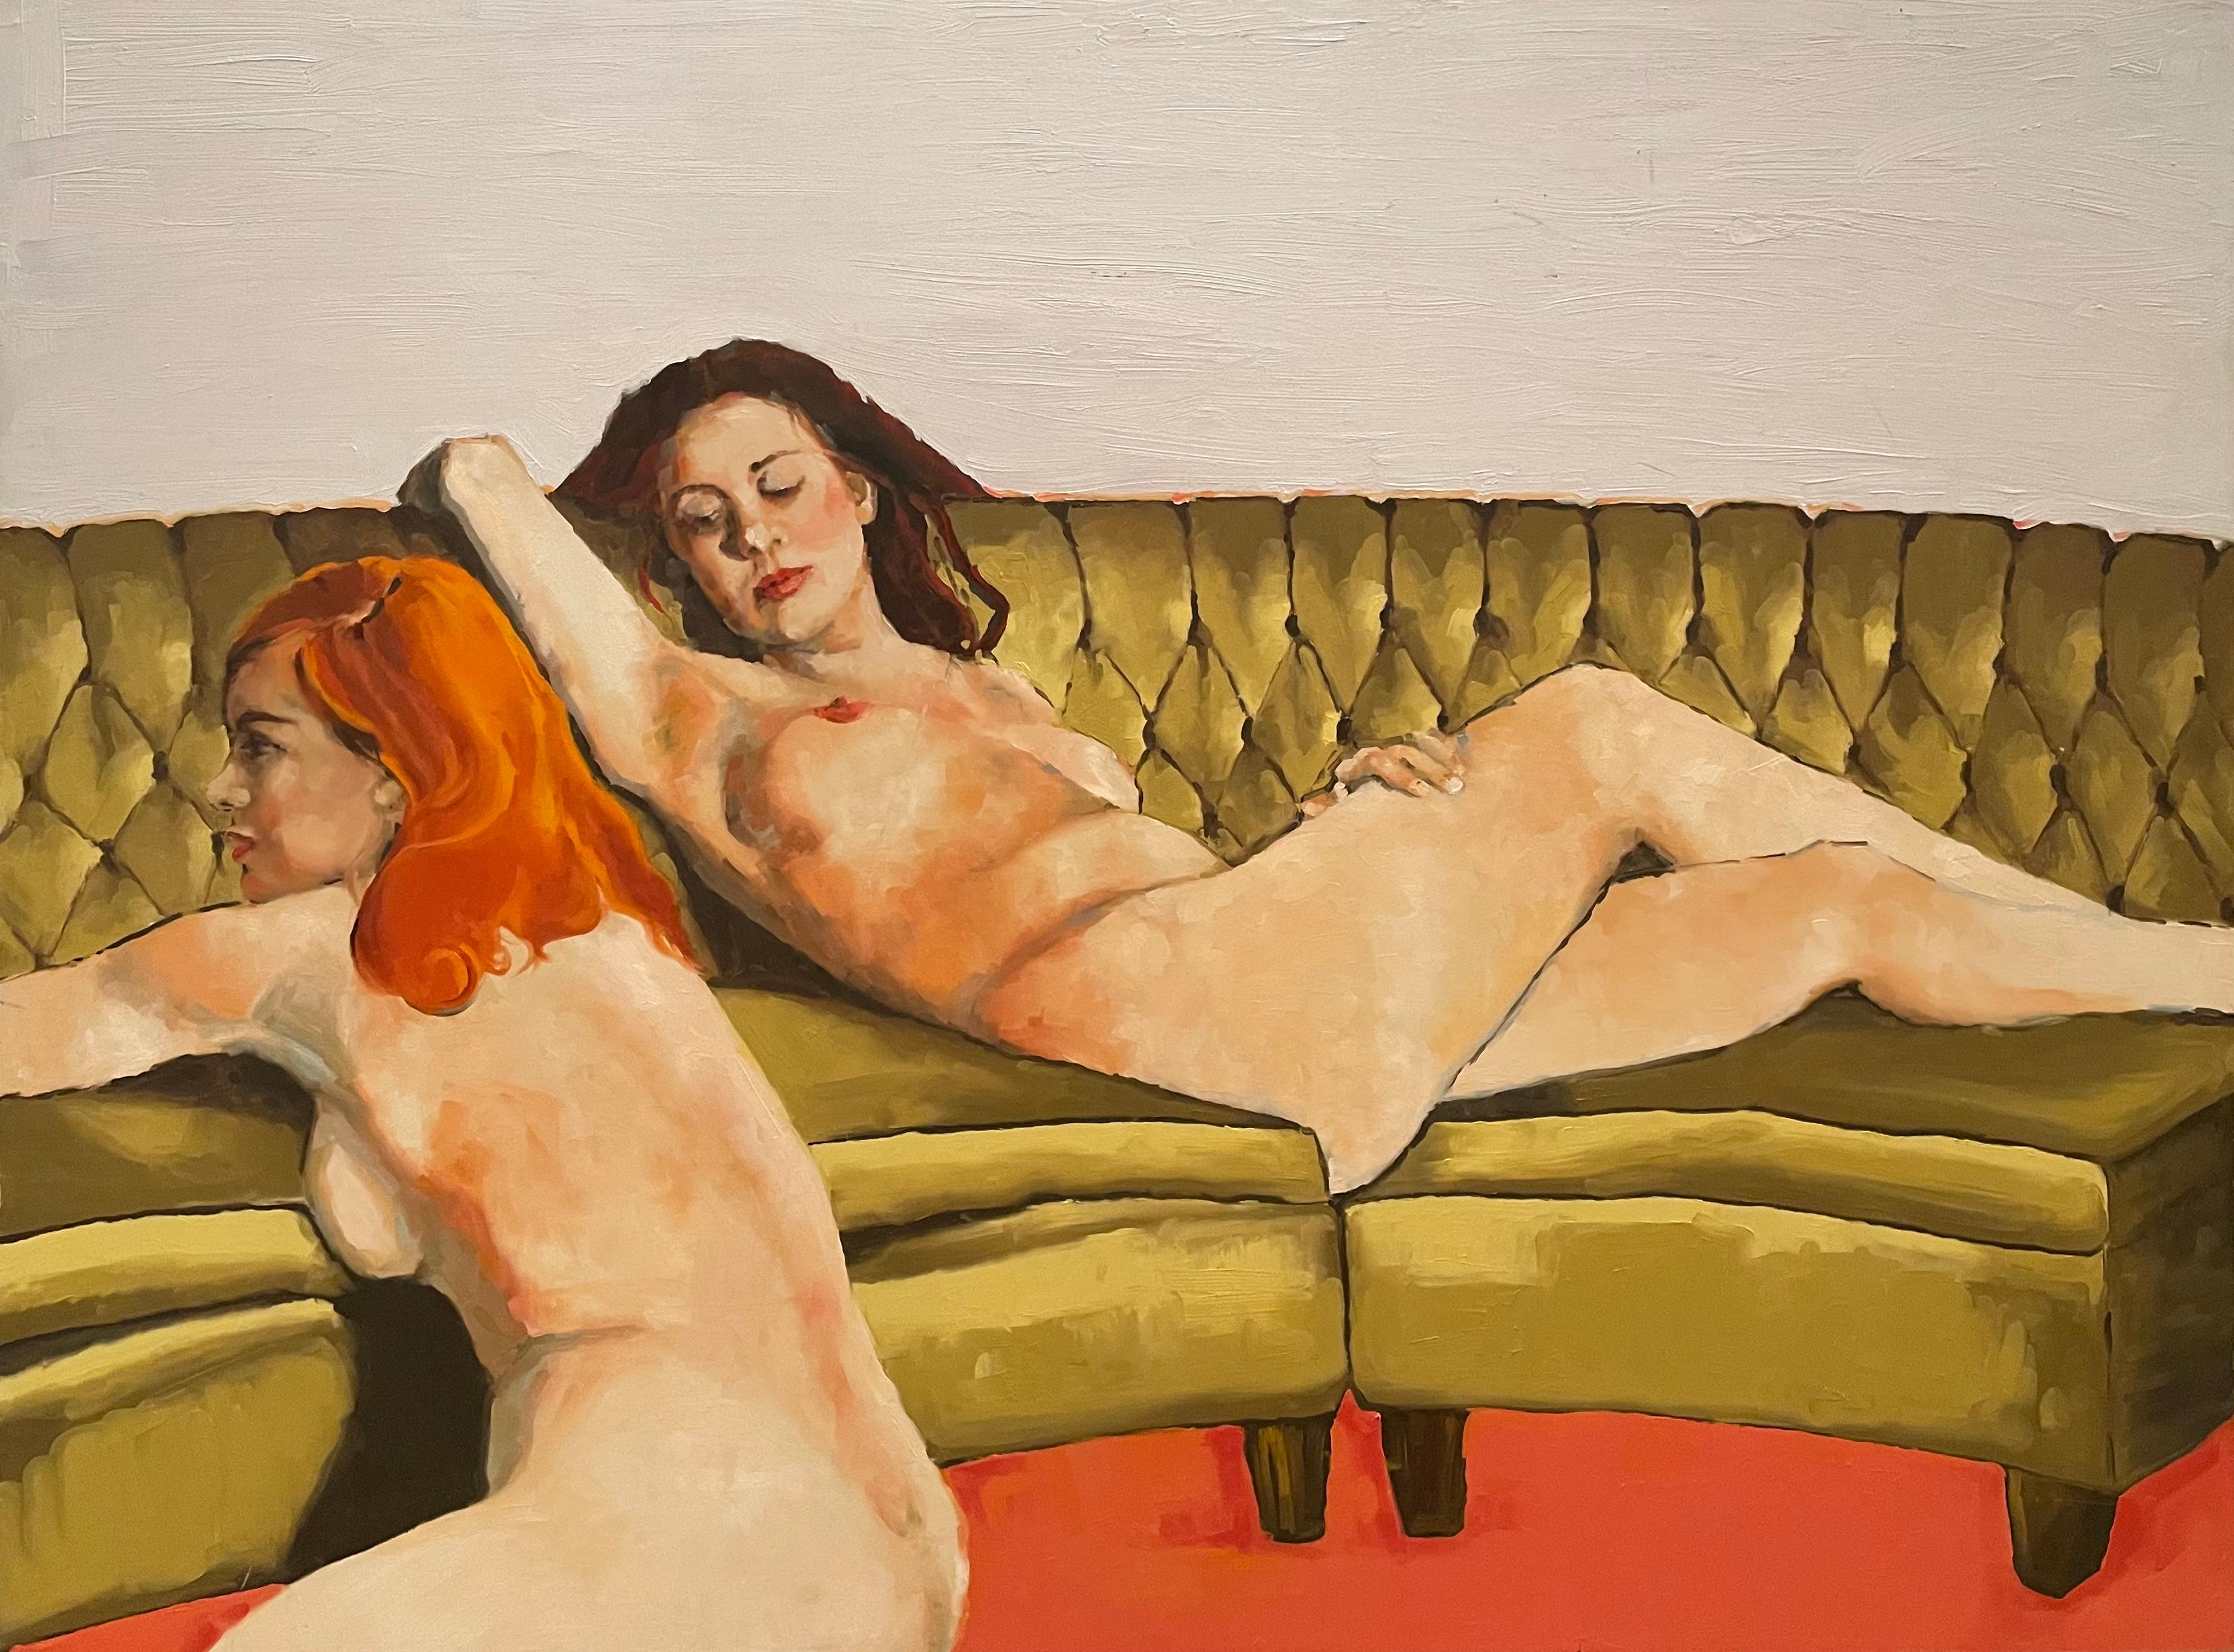 "Two Nude Women on Couch" de l'artiste de renom Shana Wilson présente une composition saisissante où une femme aux cheveux orange est allongée sur un canapé beige clair, tandis que l'autre, une brune, est assise sur le tapis rouge-orange. Le